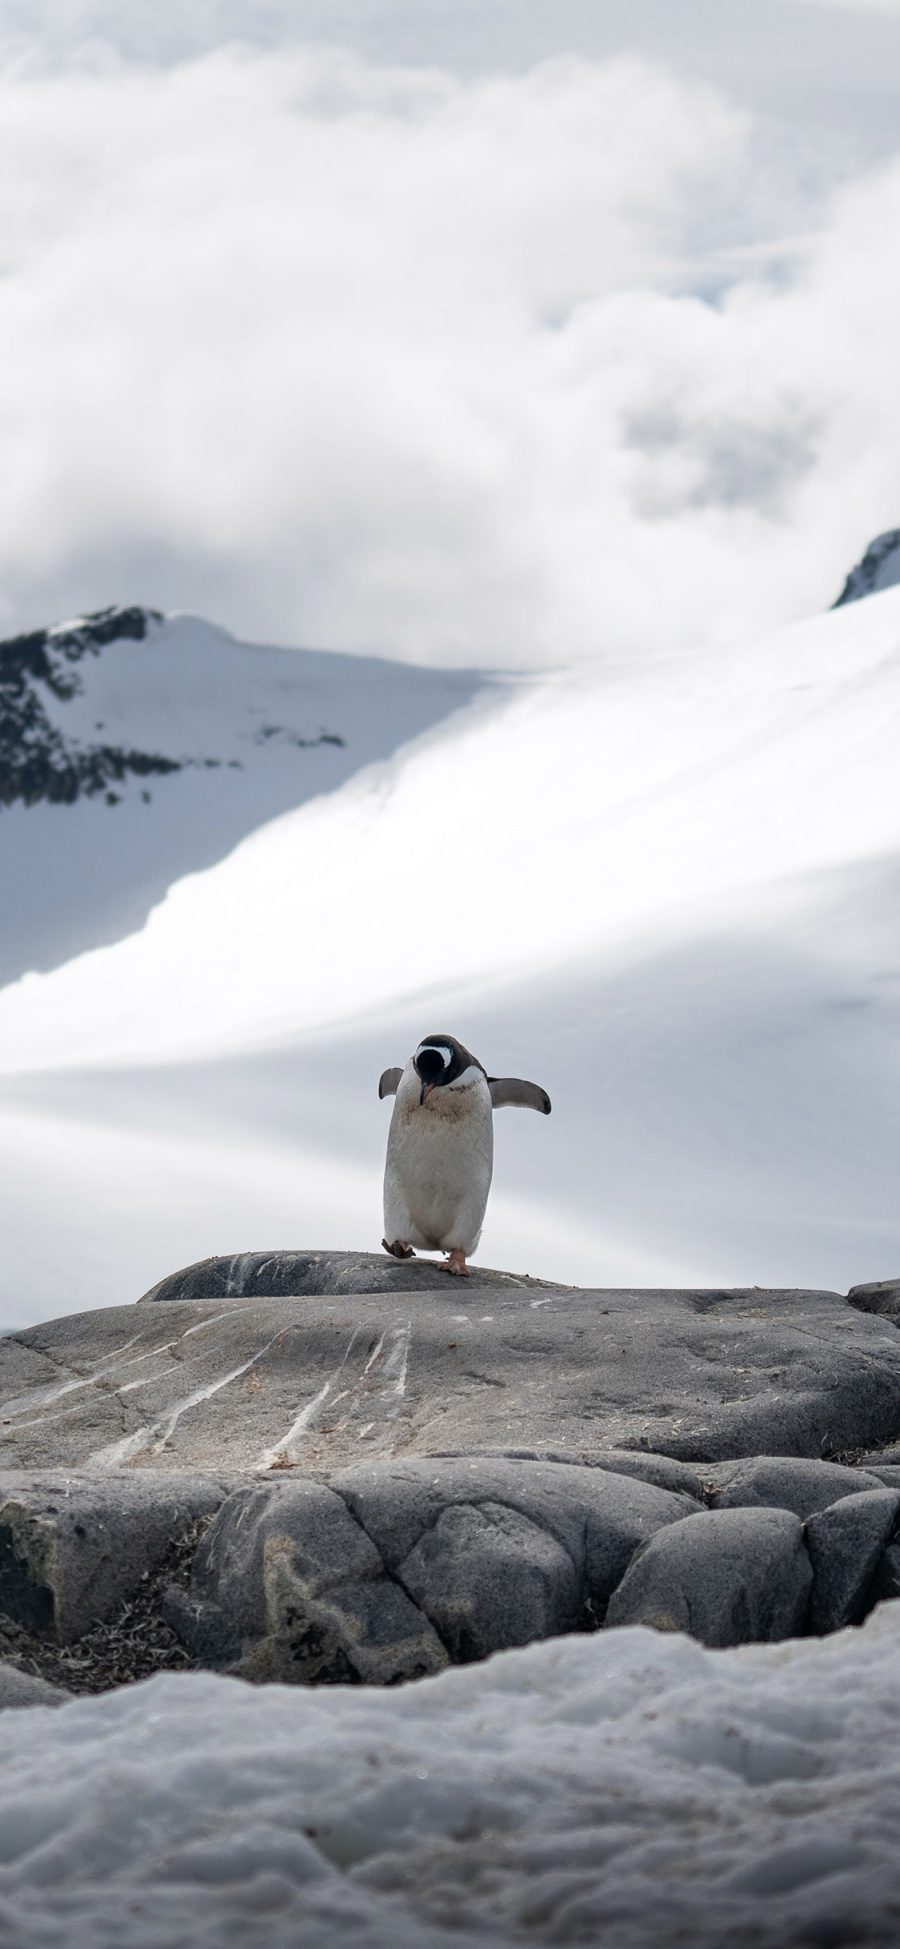 [2436×1125]山峰 雪山 南极 企鹅 苹果手机壁纸图片